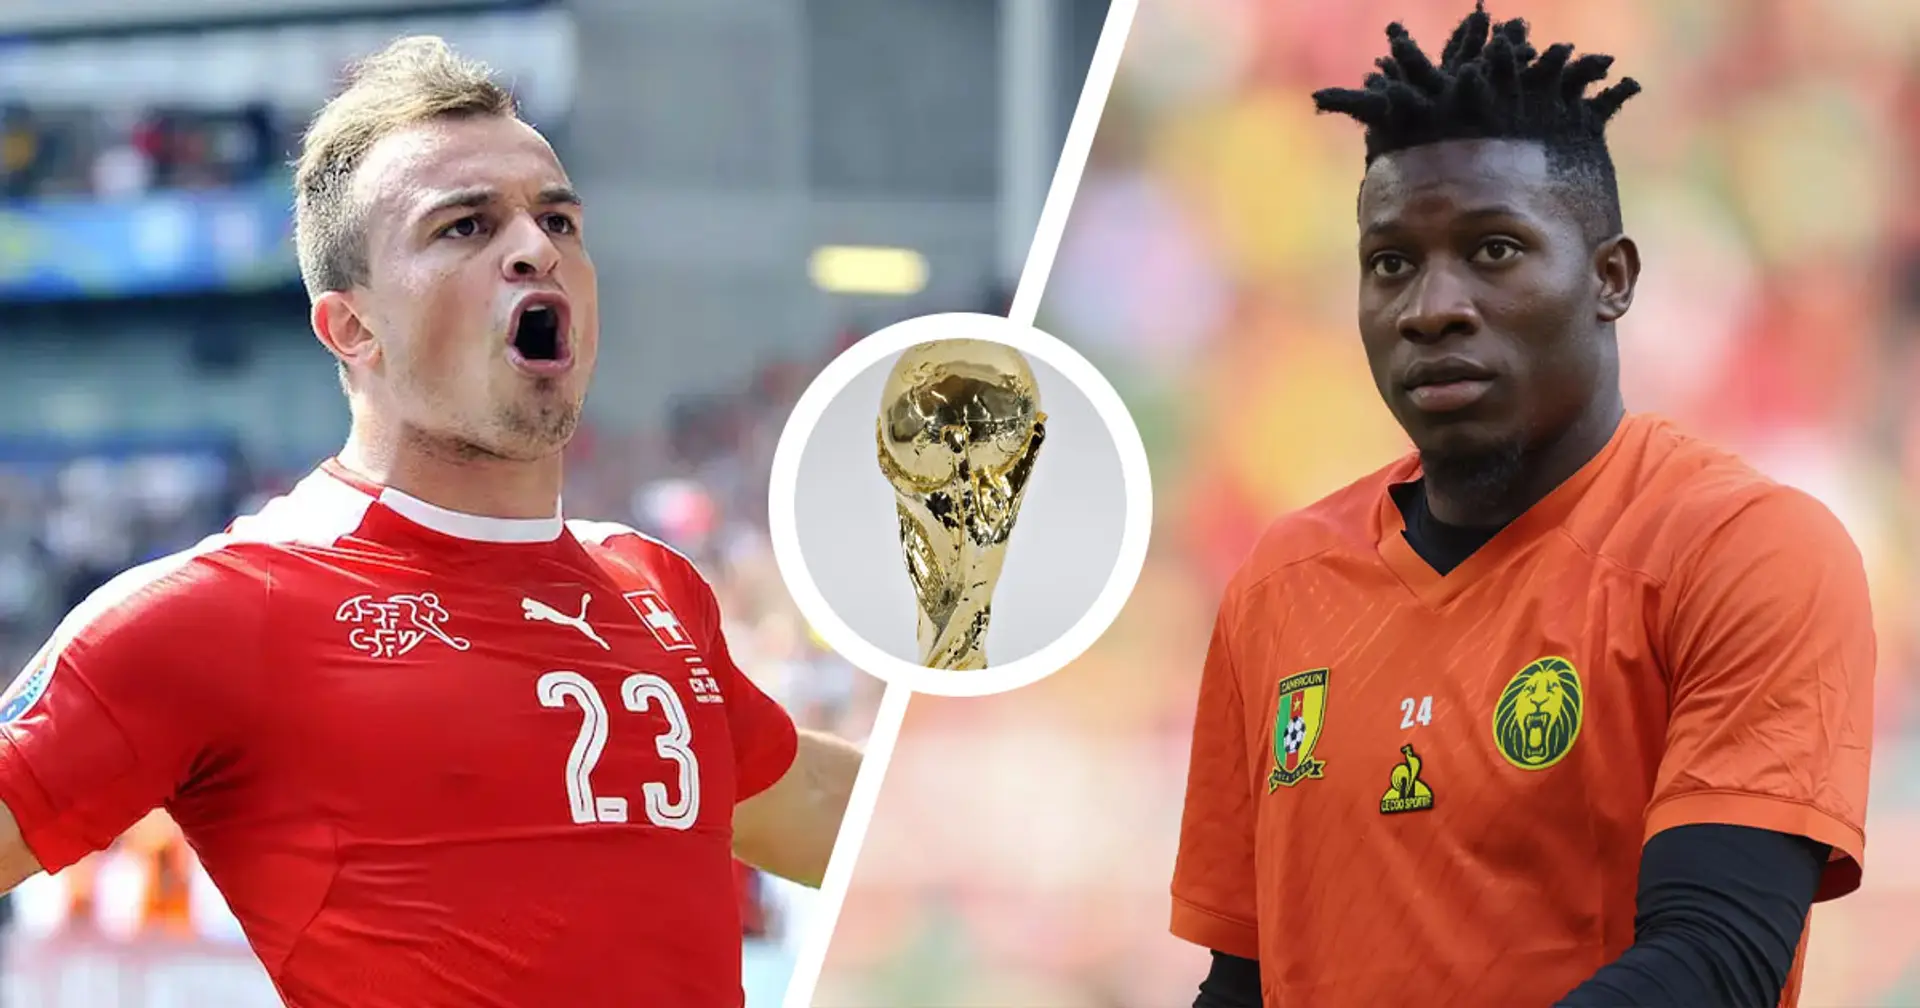 Svizzera vs Camerun: le formazioni ufficiali delle squadre per la partita della Coppa del Mondo Qatar 2022 